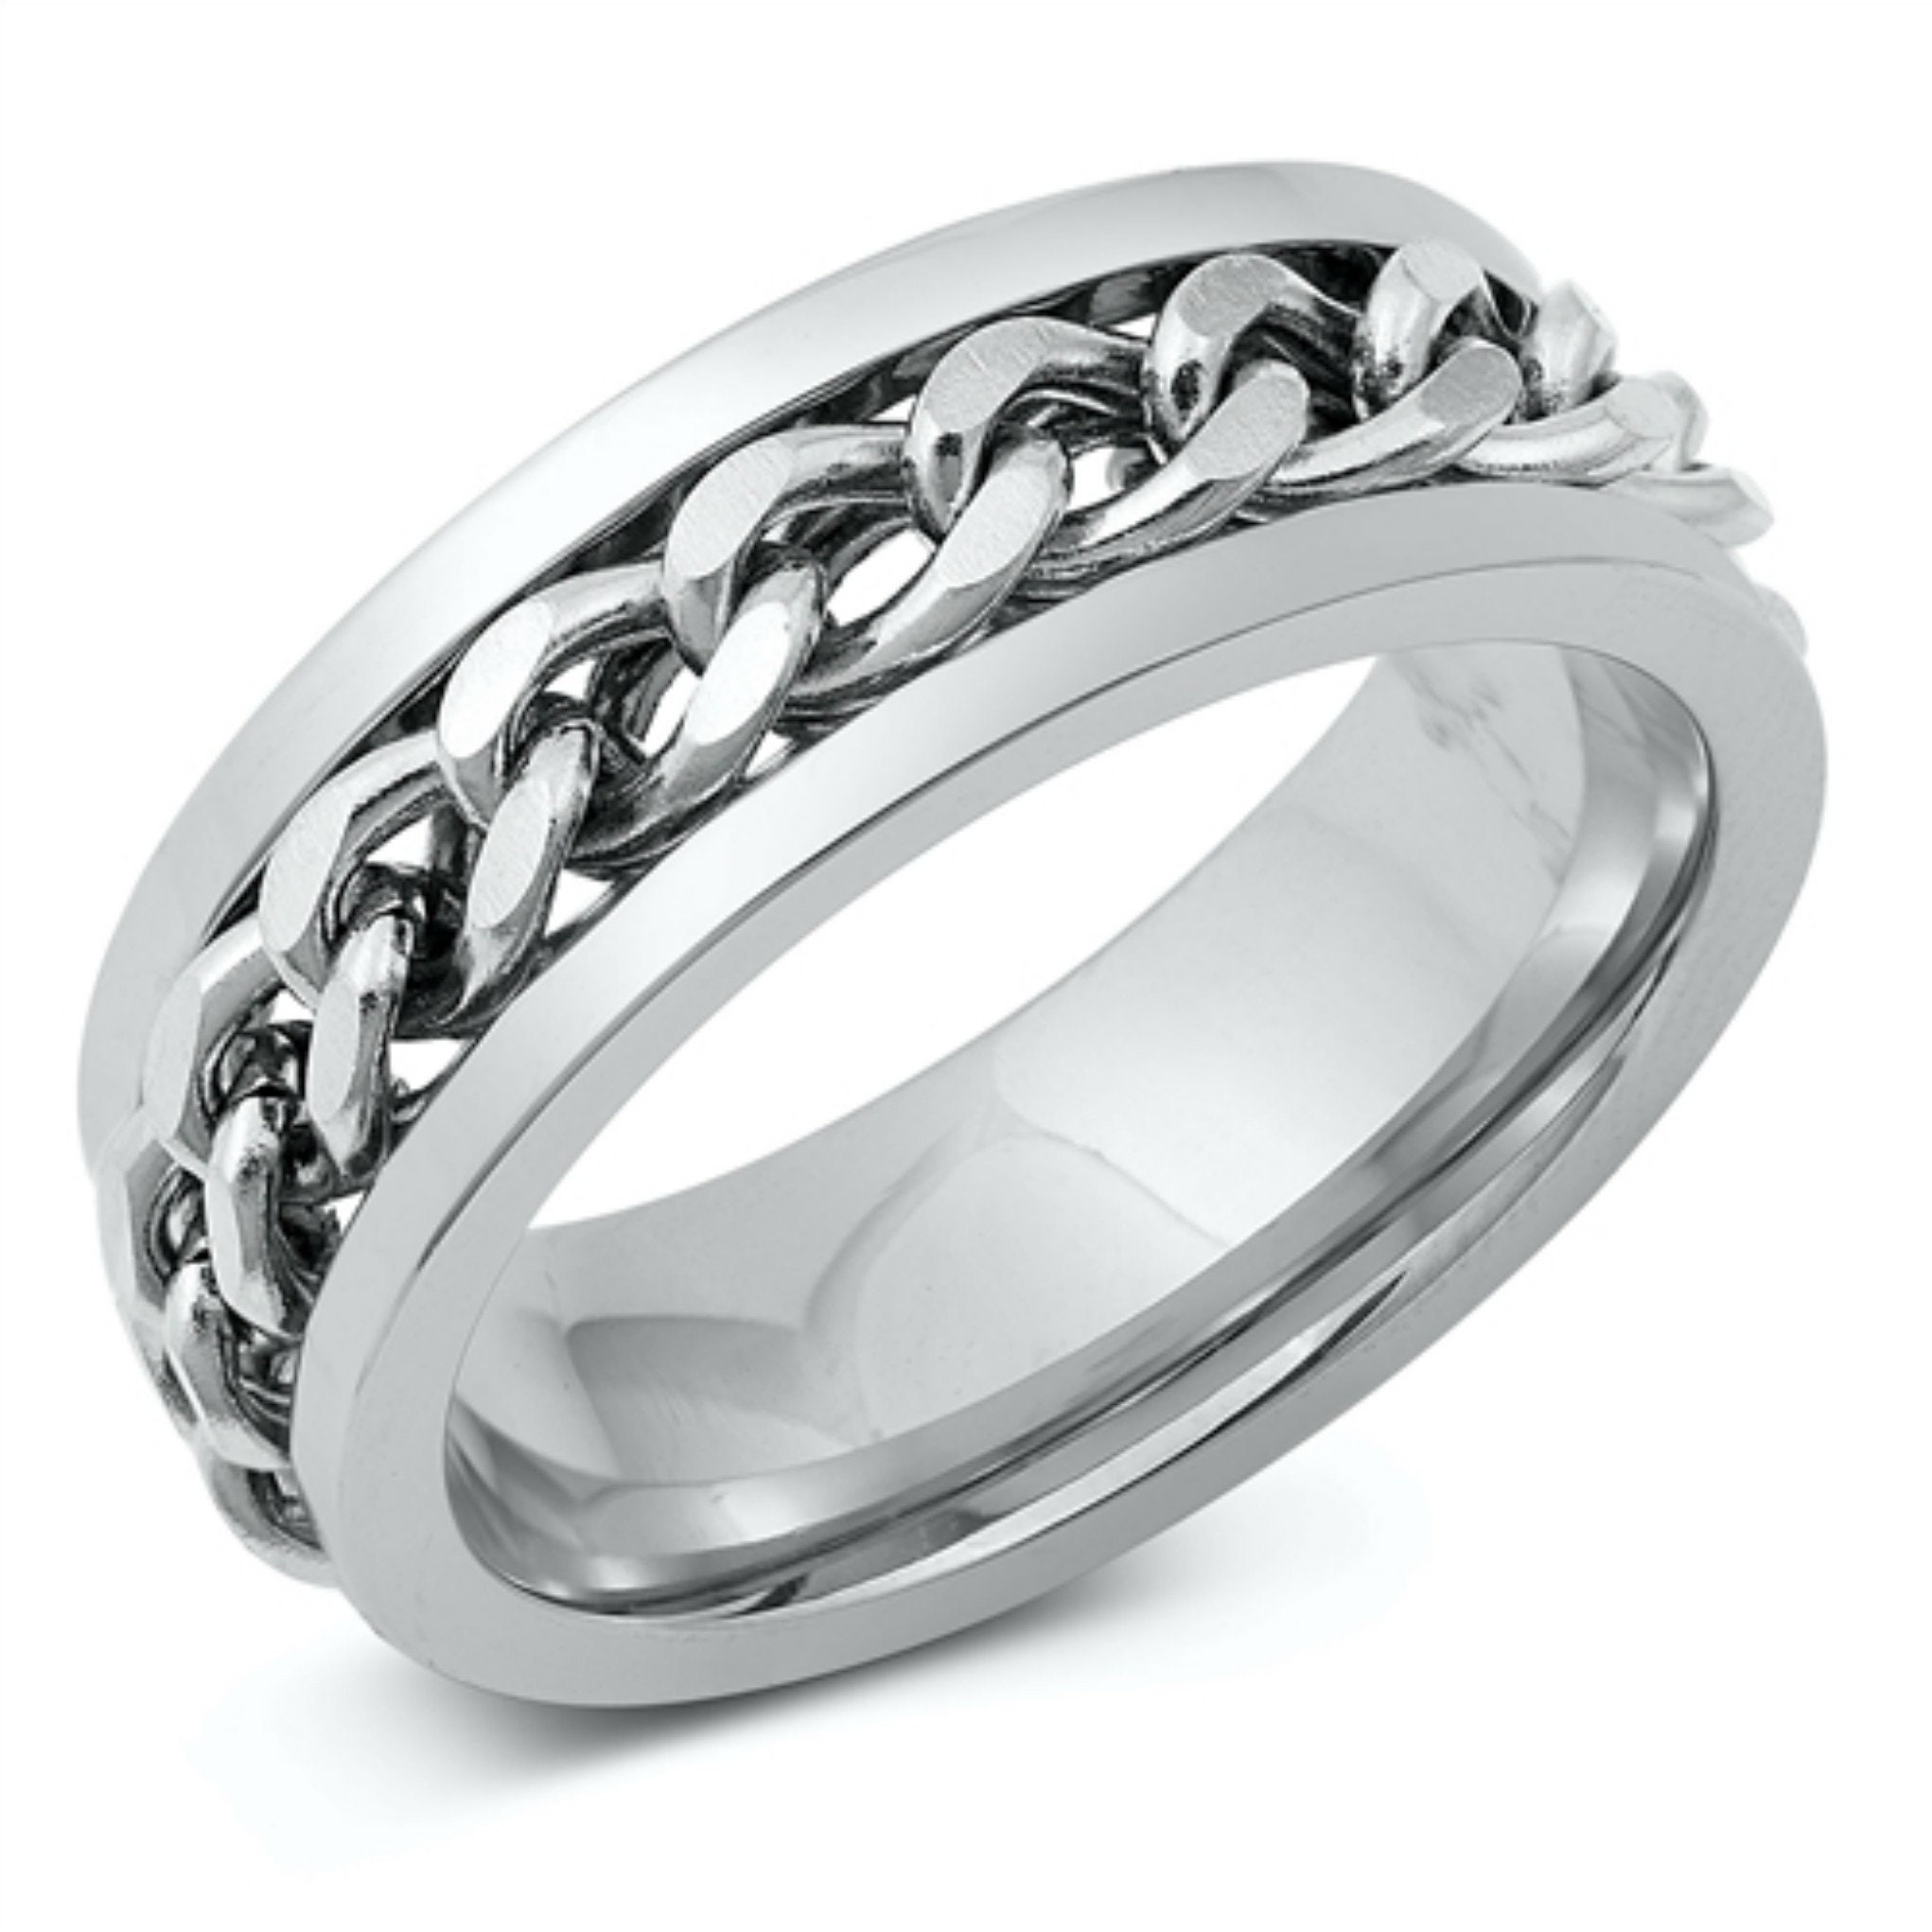 Ring for Men, Silver Ring for Men, Stainless Steel Men's Ring, Band, #ringsformen Boyfriend Gift for Men, Nervous Habit, Anxiety #Fidget